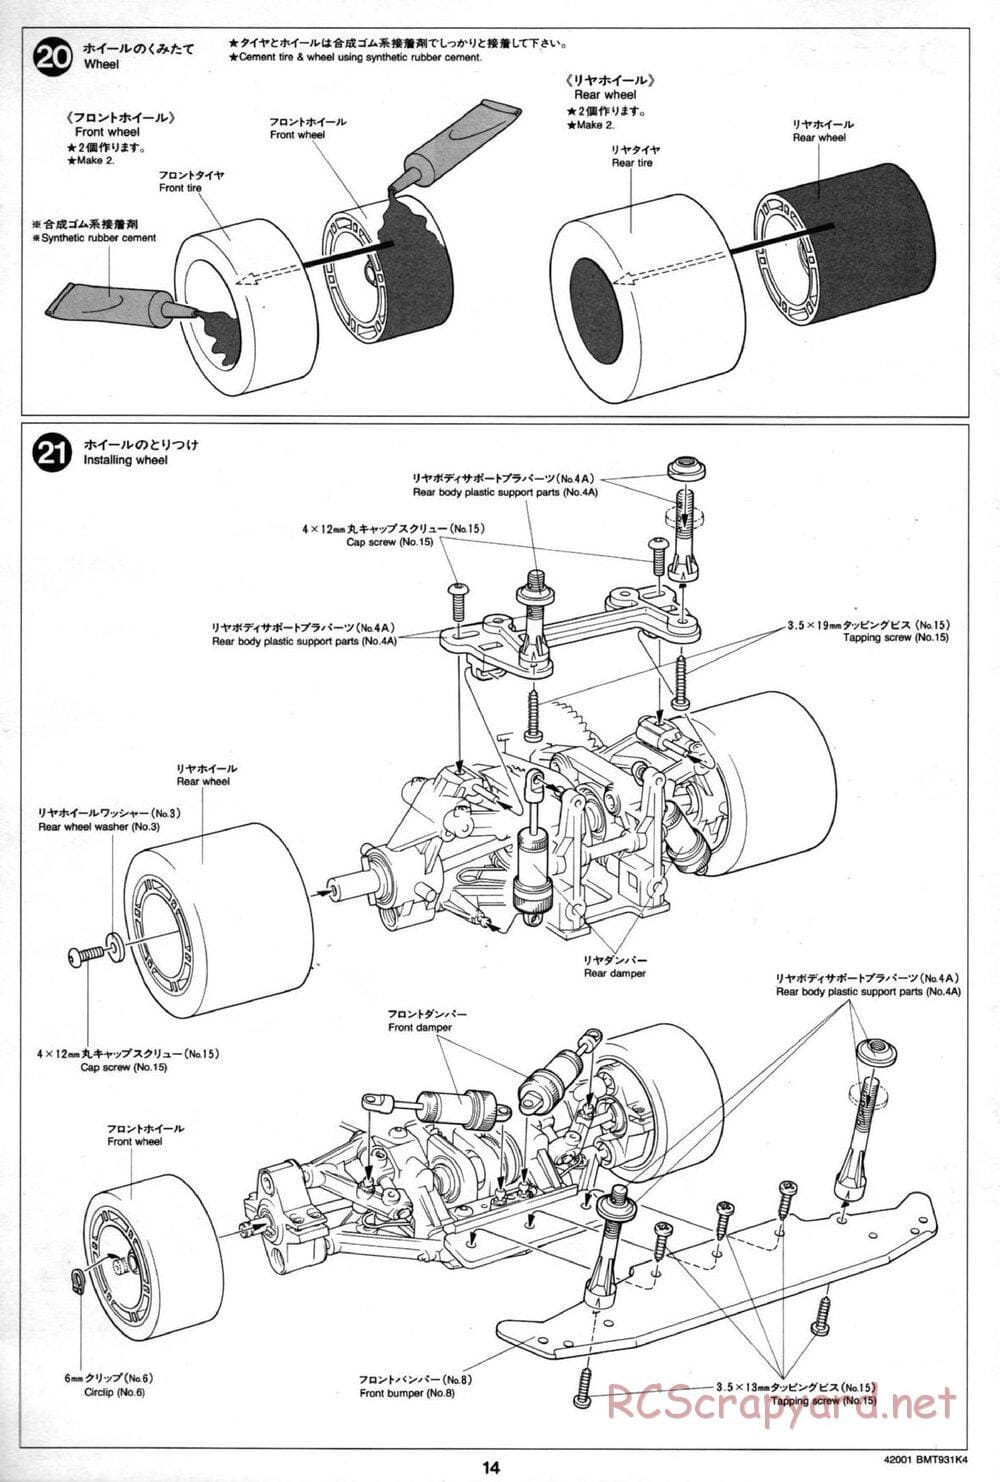 Tamiya - BMT 931 K4 Racing Chassis - Manual - Page 14